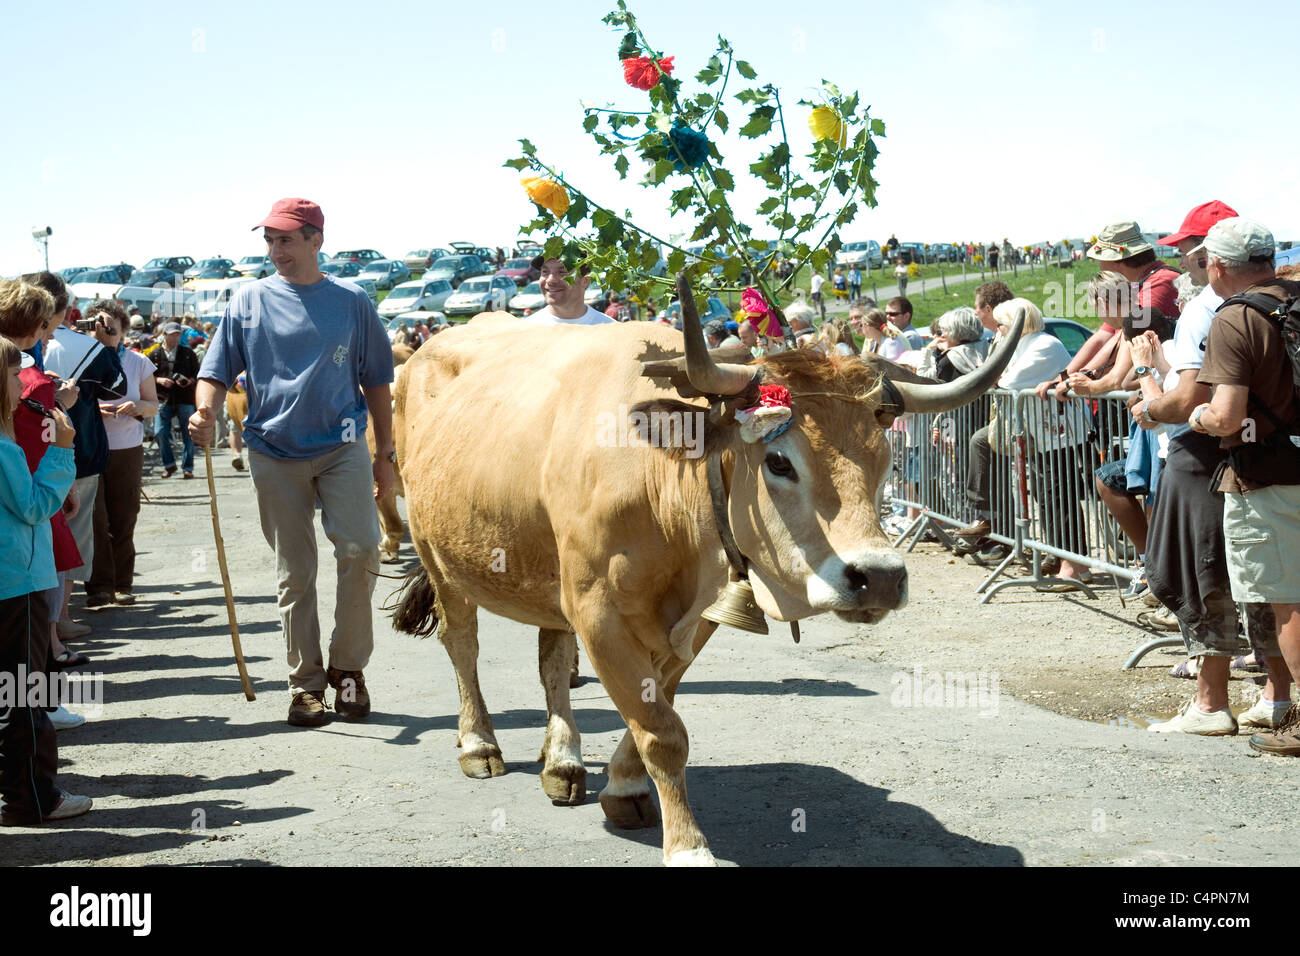 Les spectateurs applaudir défilés colorés au cours de l'assemblée annuelle des vaches Fête de la Transhumance, c.-à-d. en troupeaux à/de pâturages d'été Banque D'Images